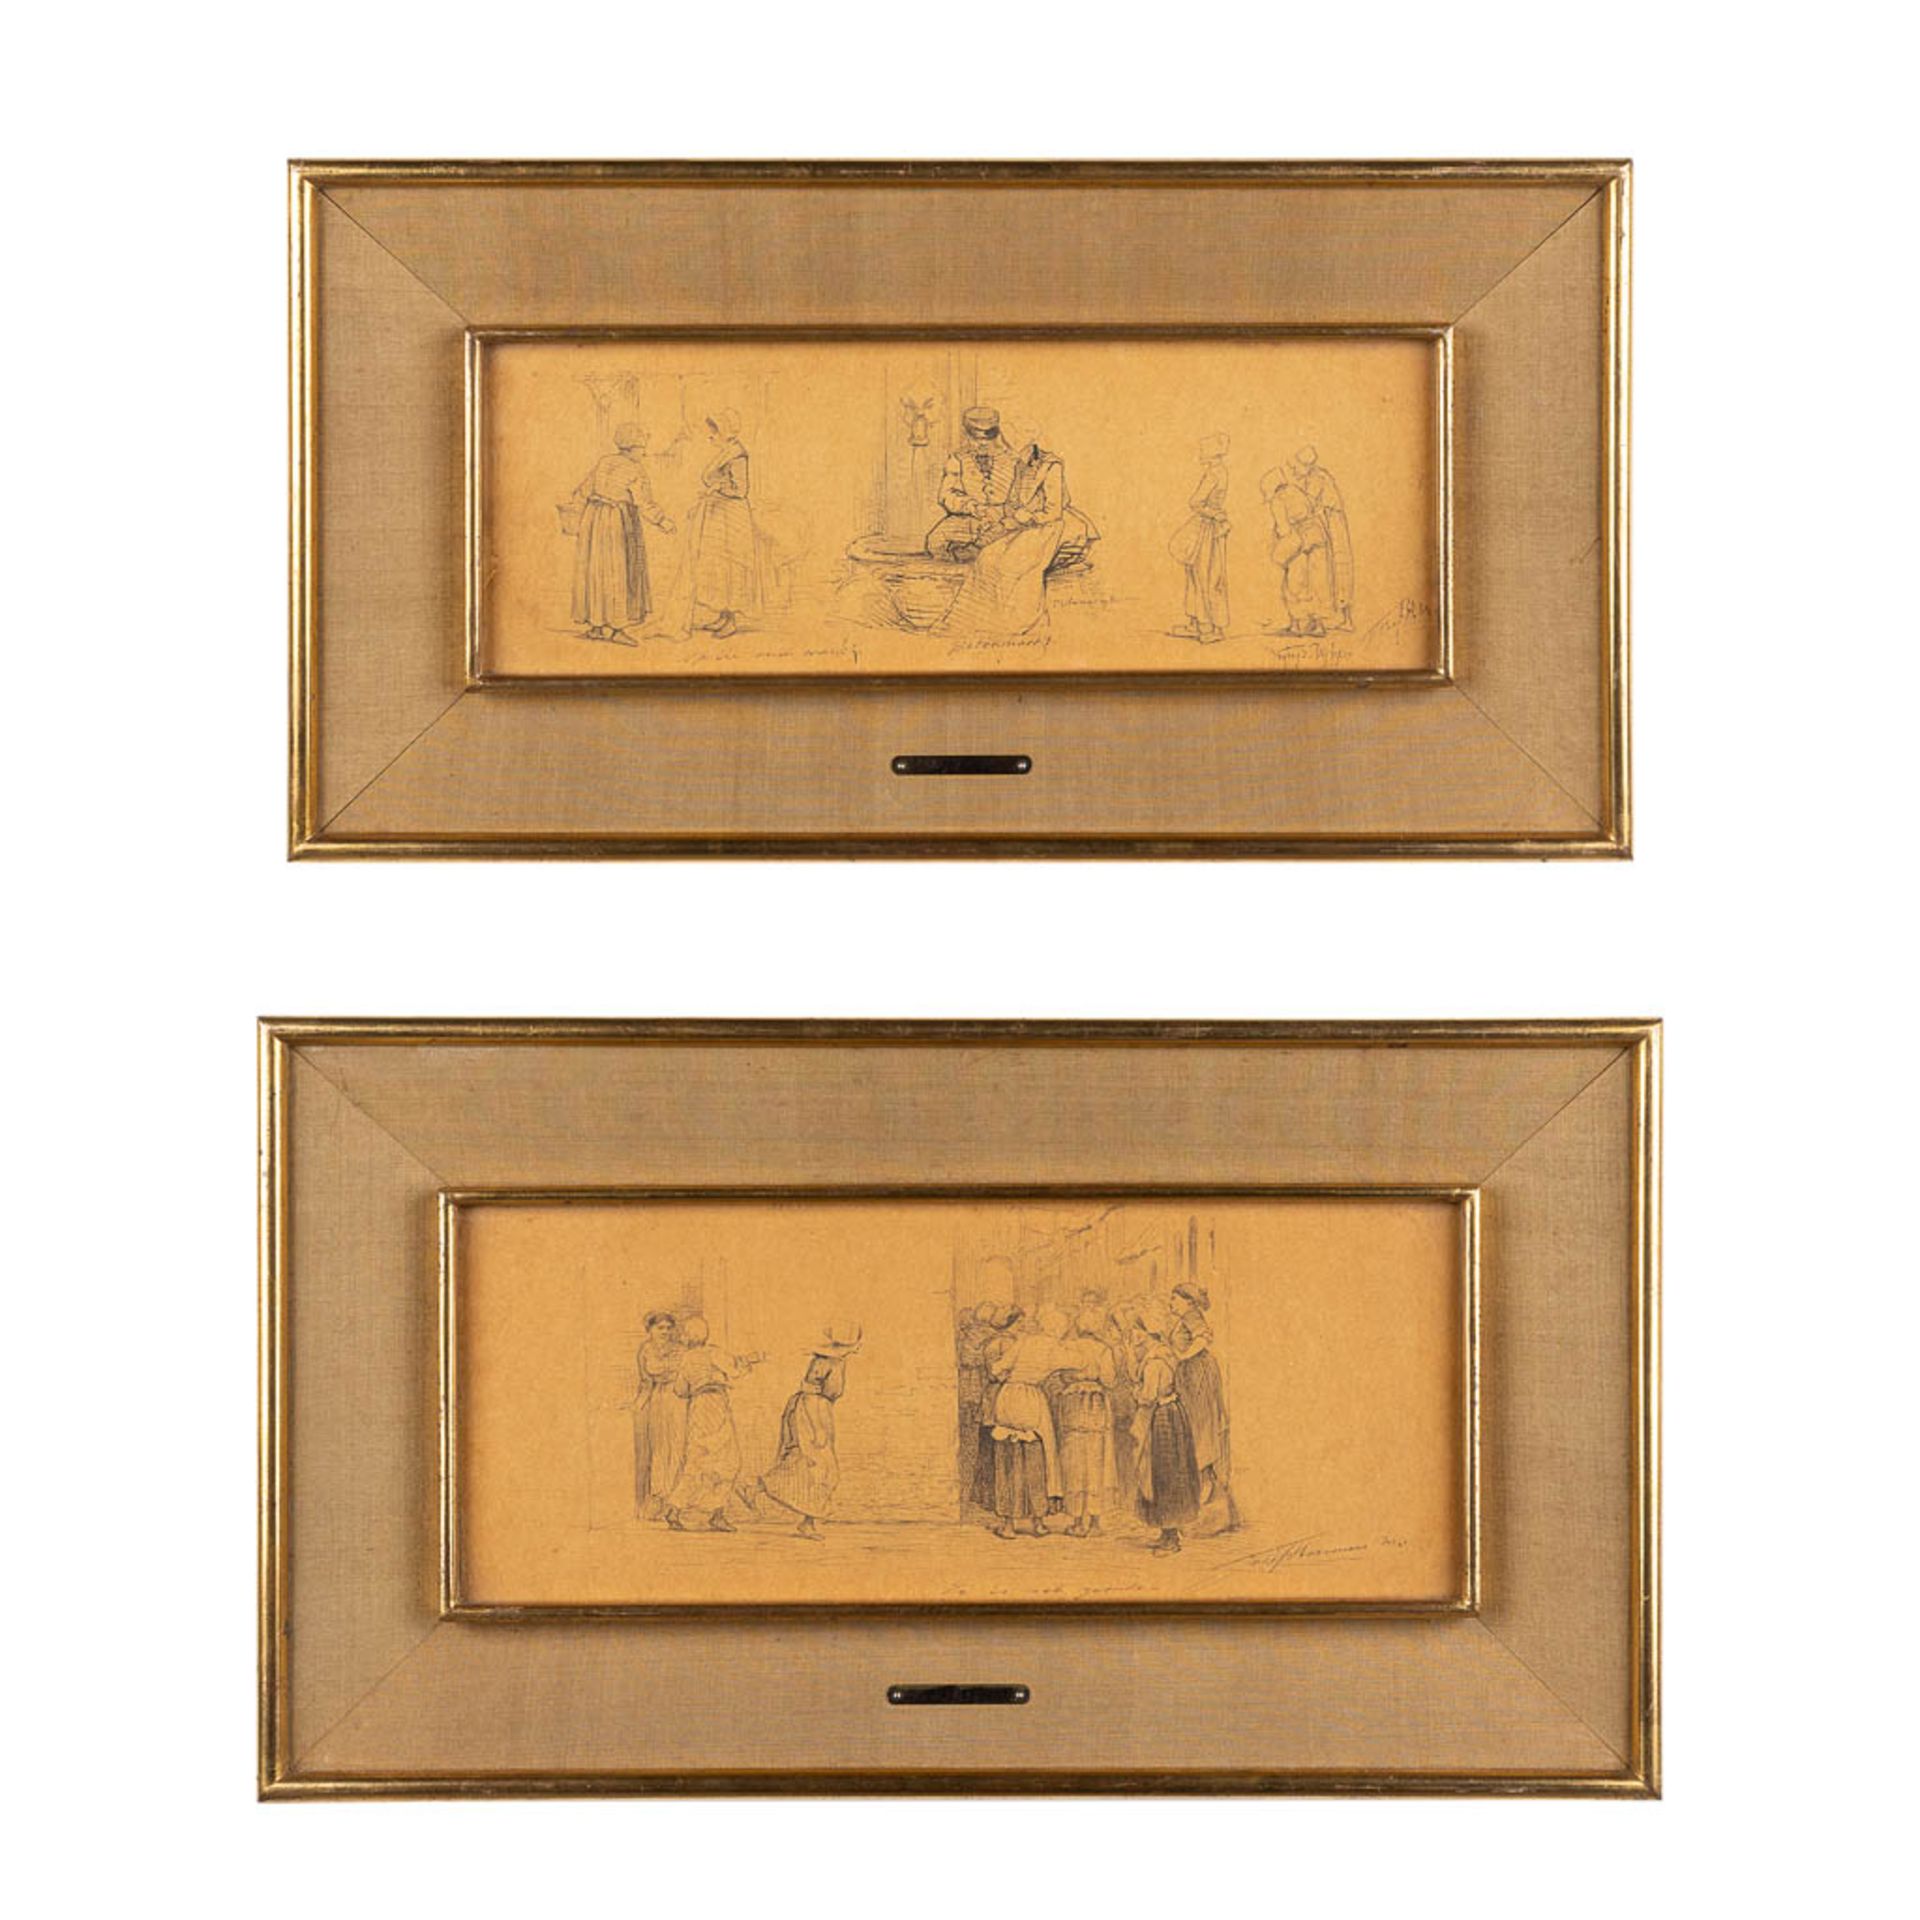 Jozef HOEVENAAR (1840-1926) 'Er Is Wat Gaande & Botermarkt' a pair of drawings. (W:36 x H:15 cm)